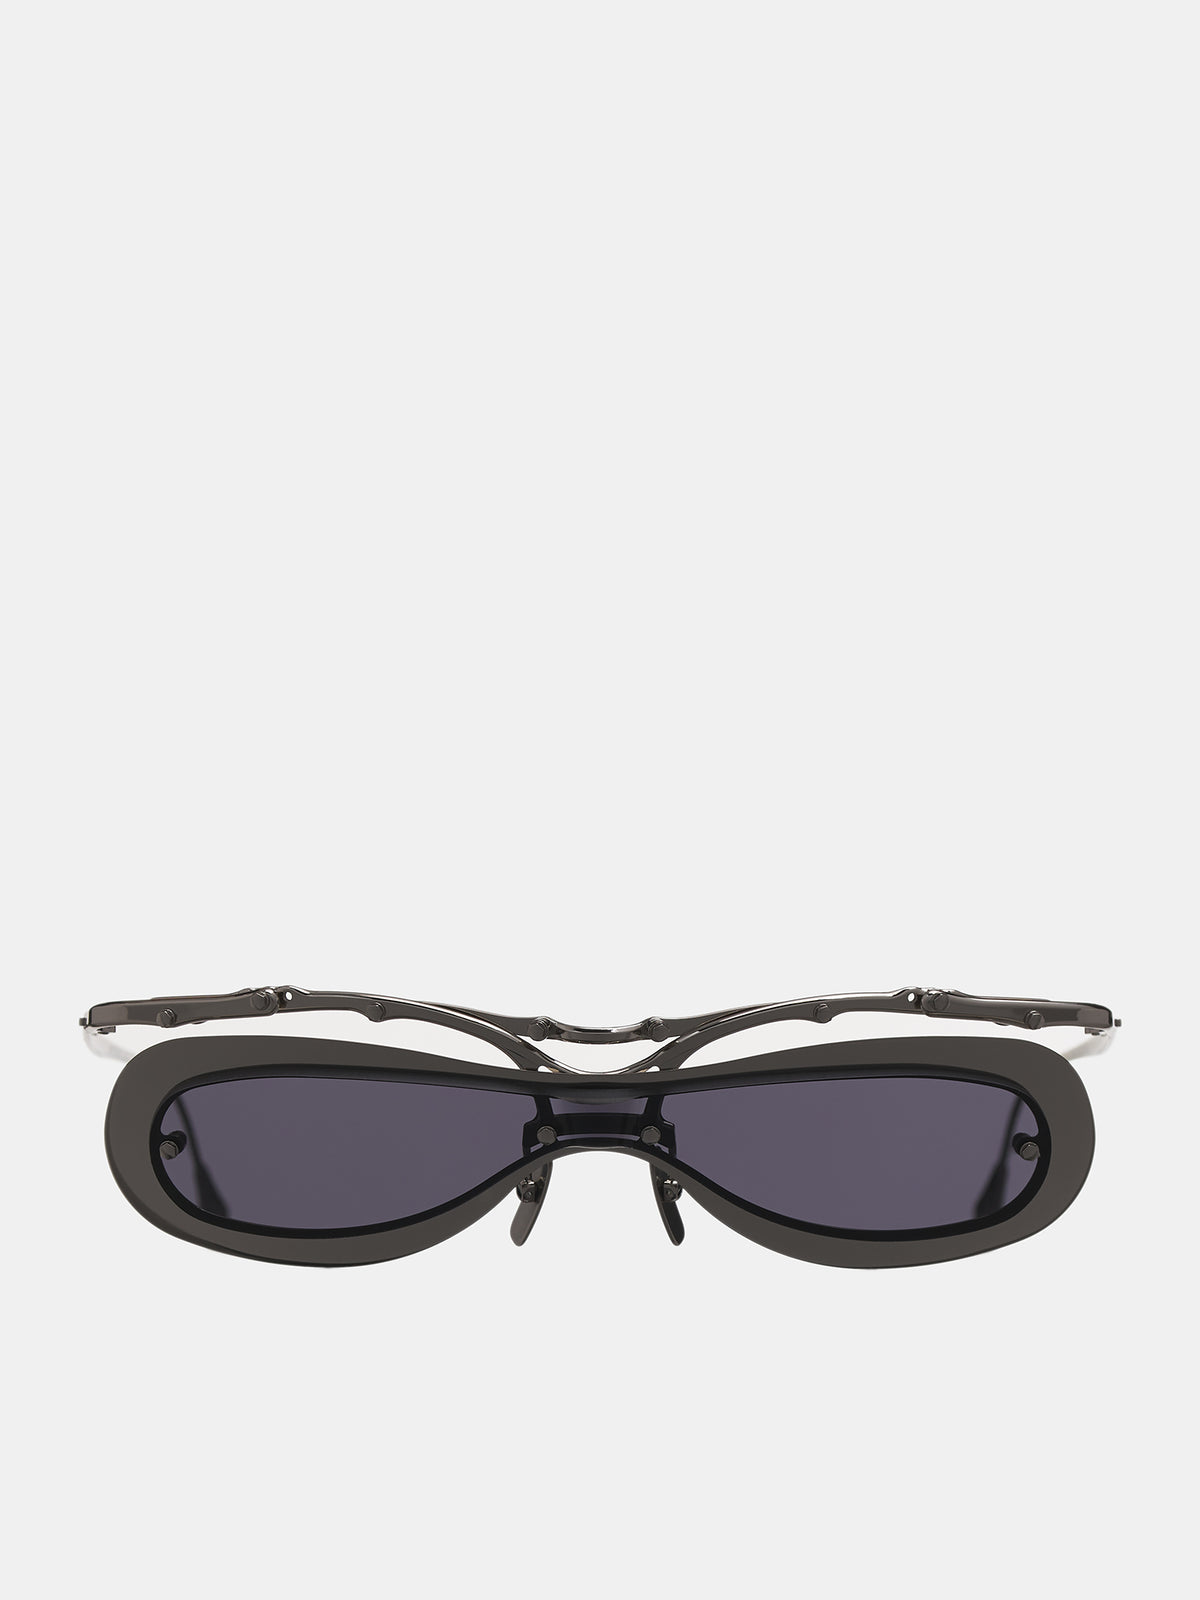 INNERRAUM OJ5 Sunglasses | H. Lorenzo - front